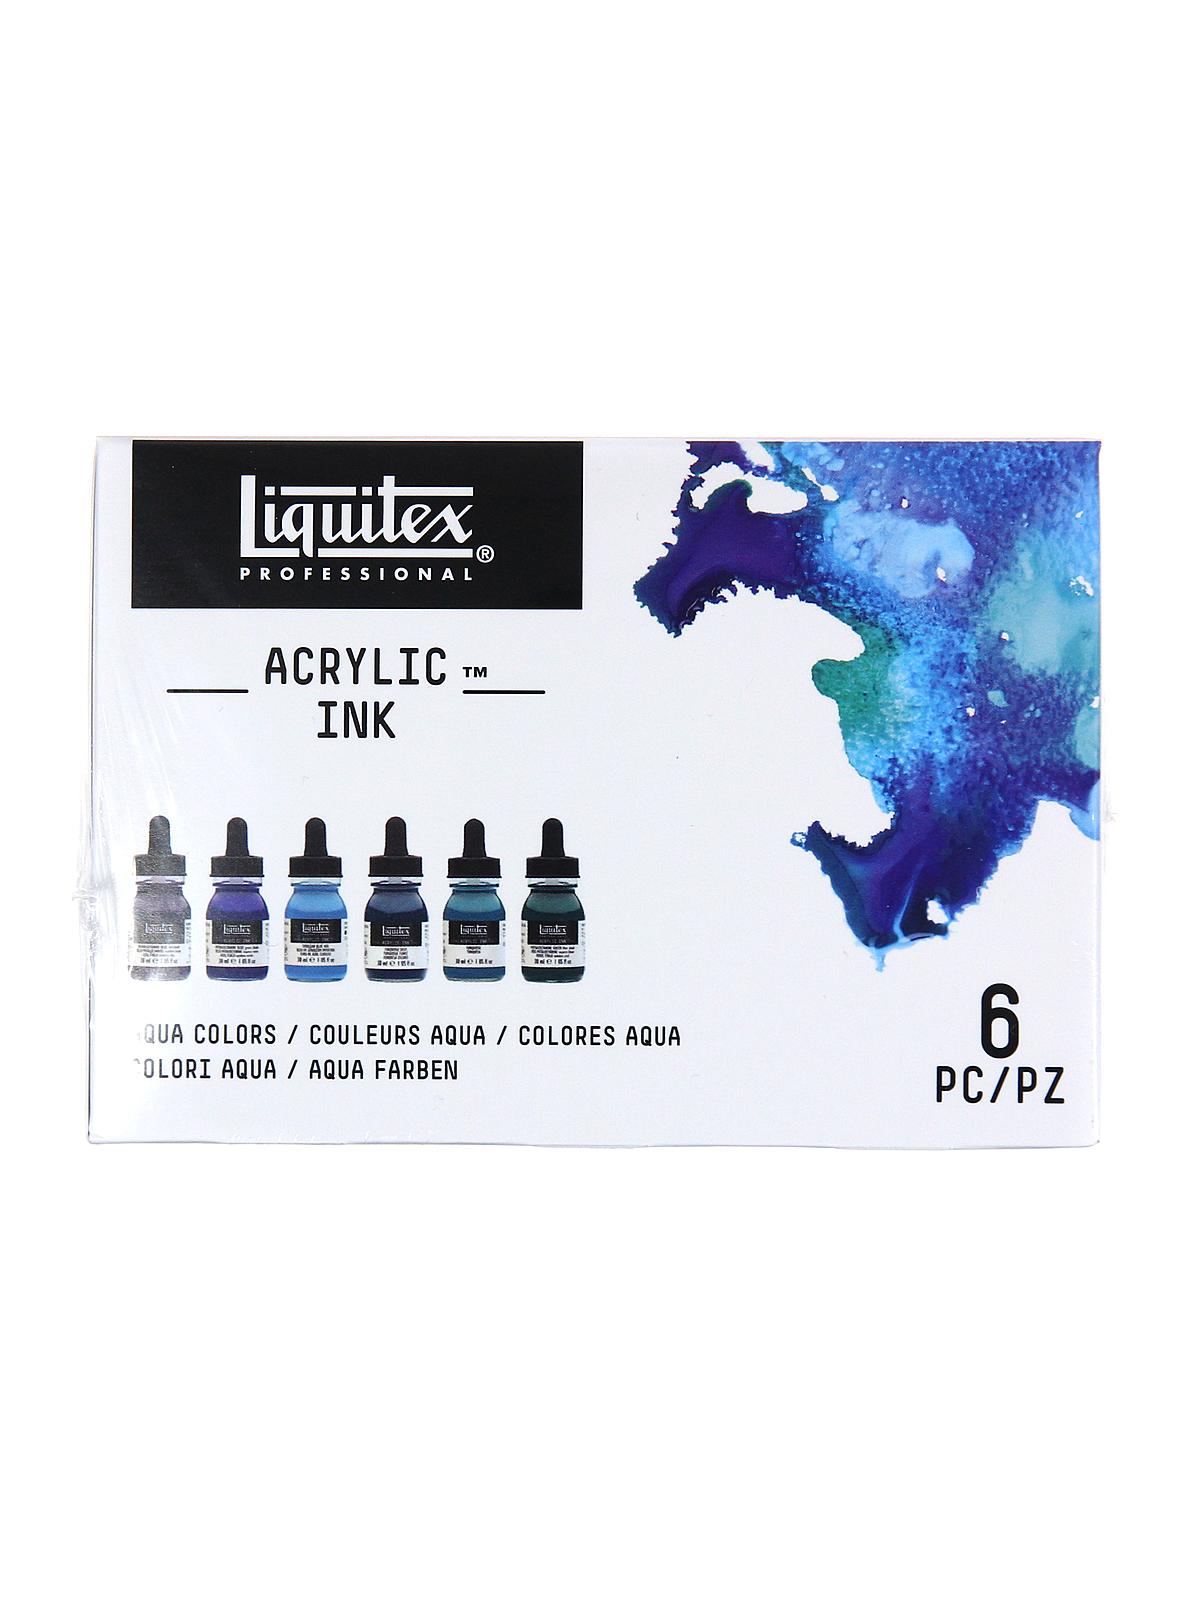 Professional Acrylic Ink Sets Aqua Colors Set Of 6